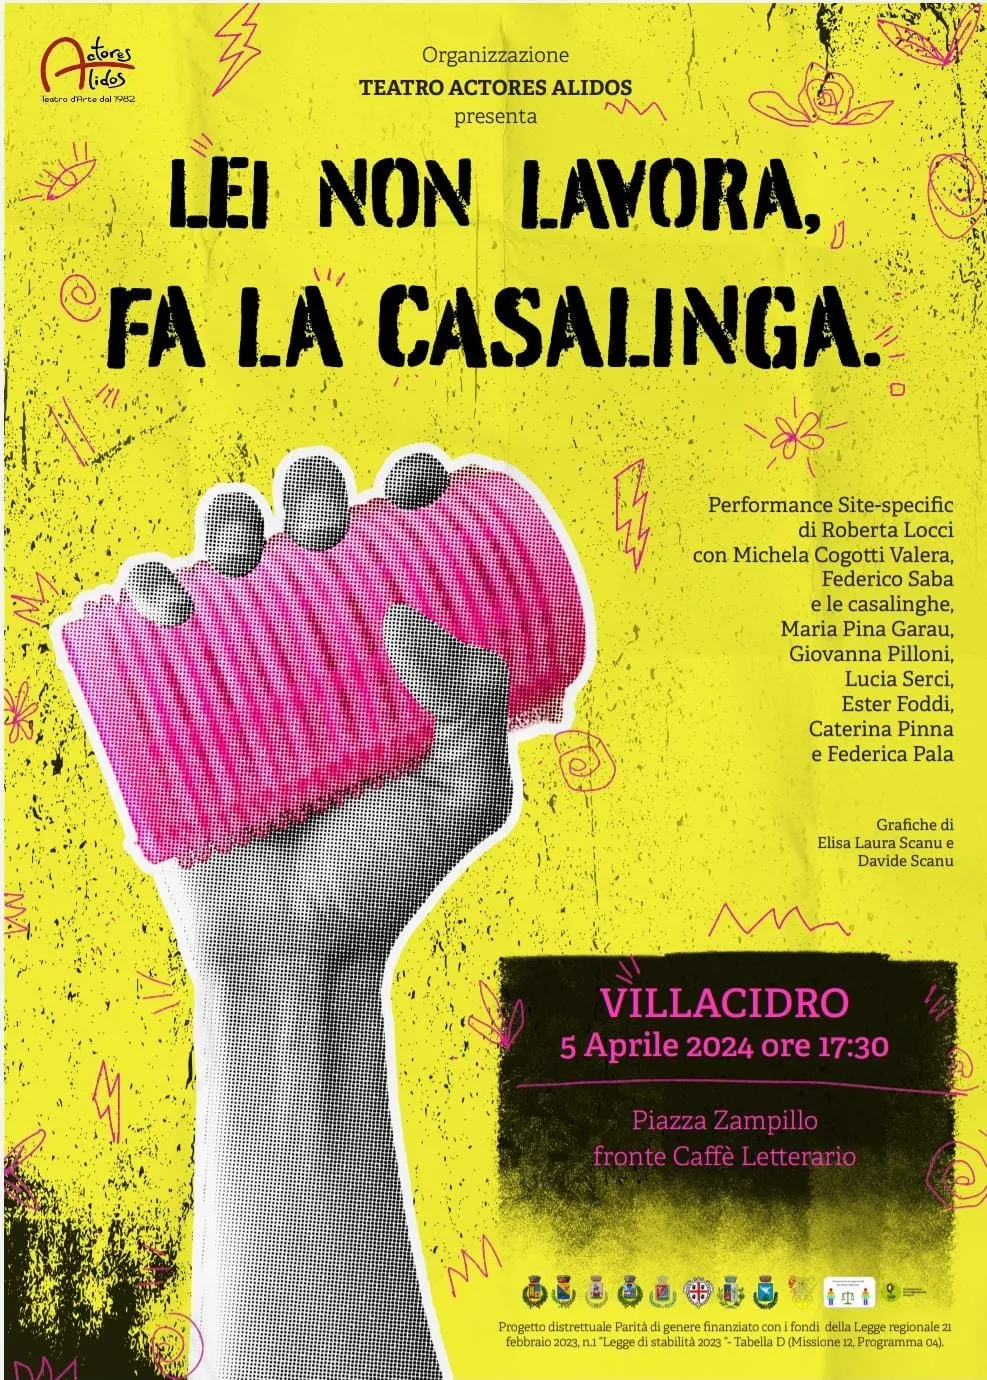 Organizzazione Teatro Actores Alidos presenta: Lei non lavora, fa la casalinga